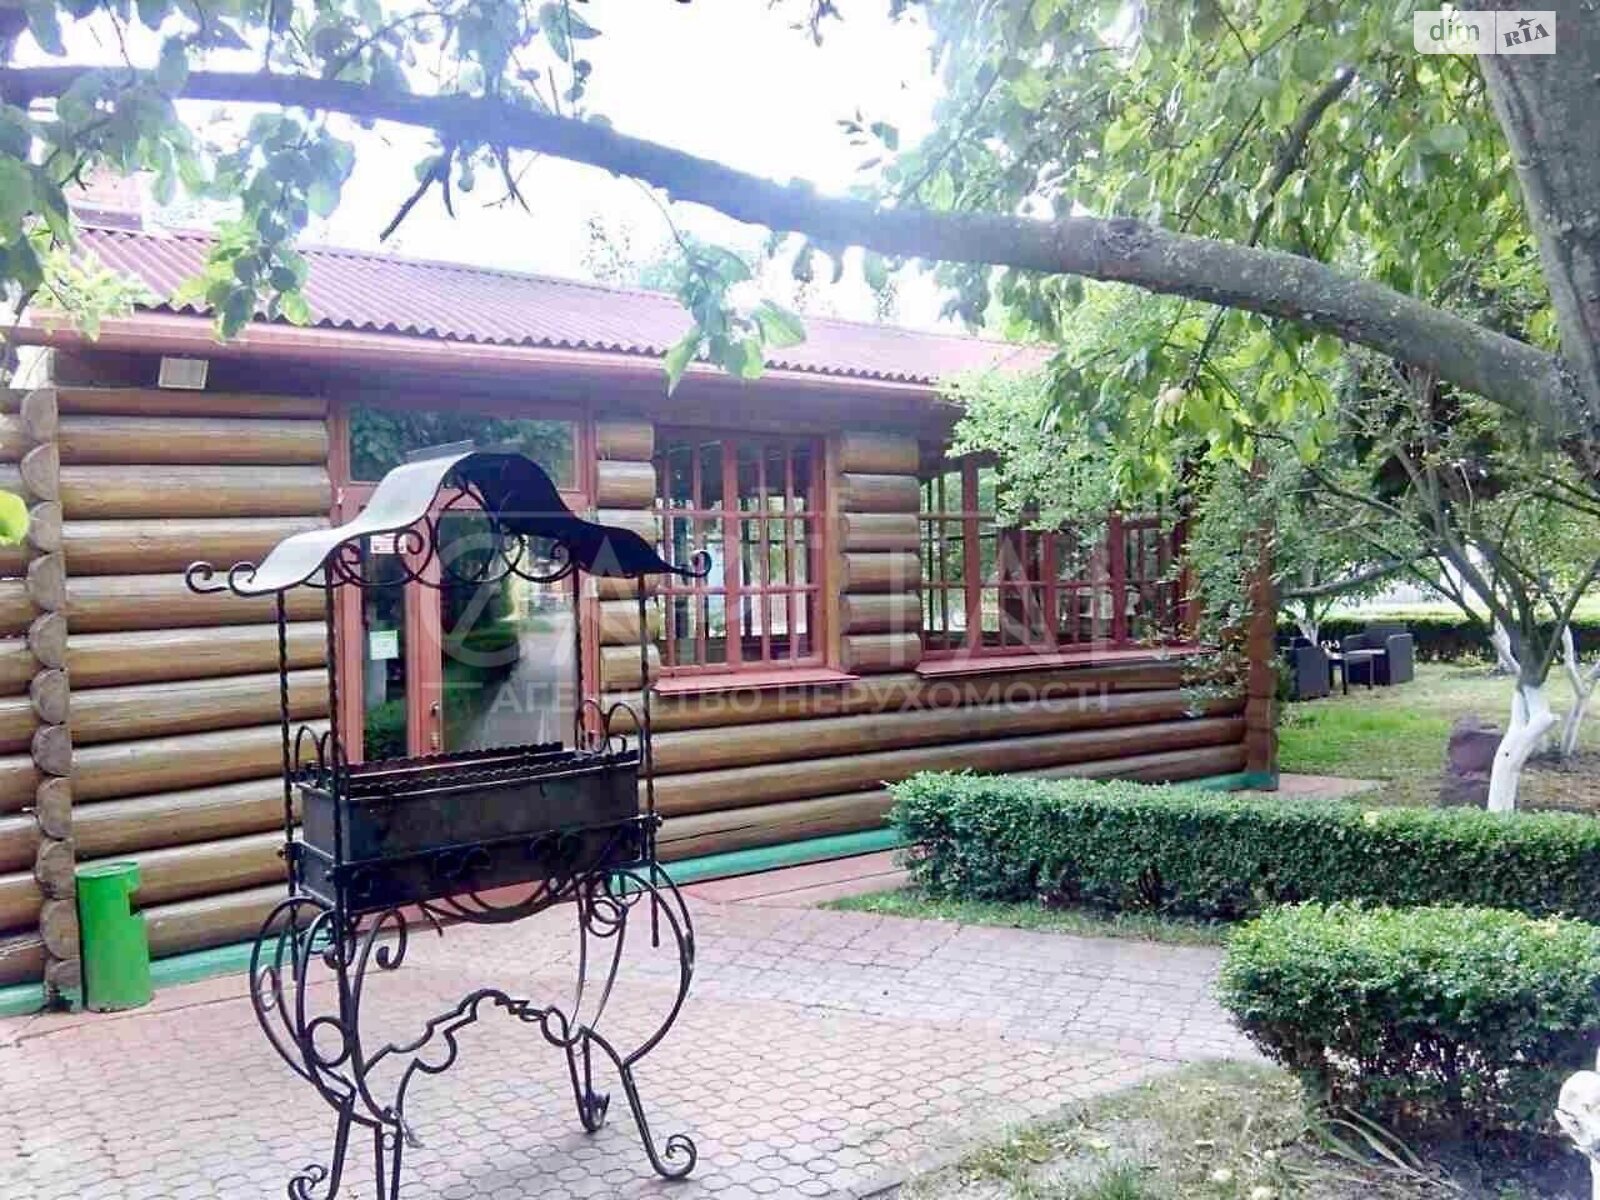 трехэтажный дом, 420 кв. м, кирпич. Сдается помесячно в Борисполе, в районе Борисполь фото 1